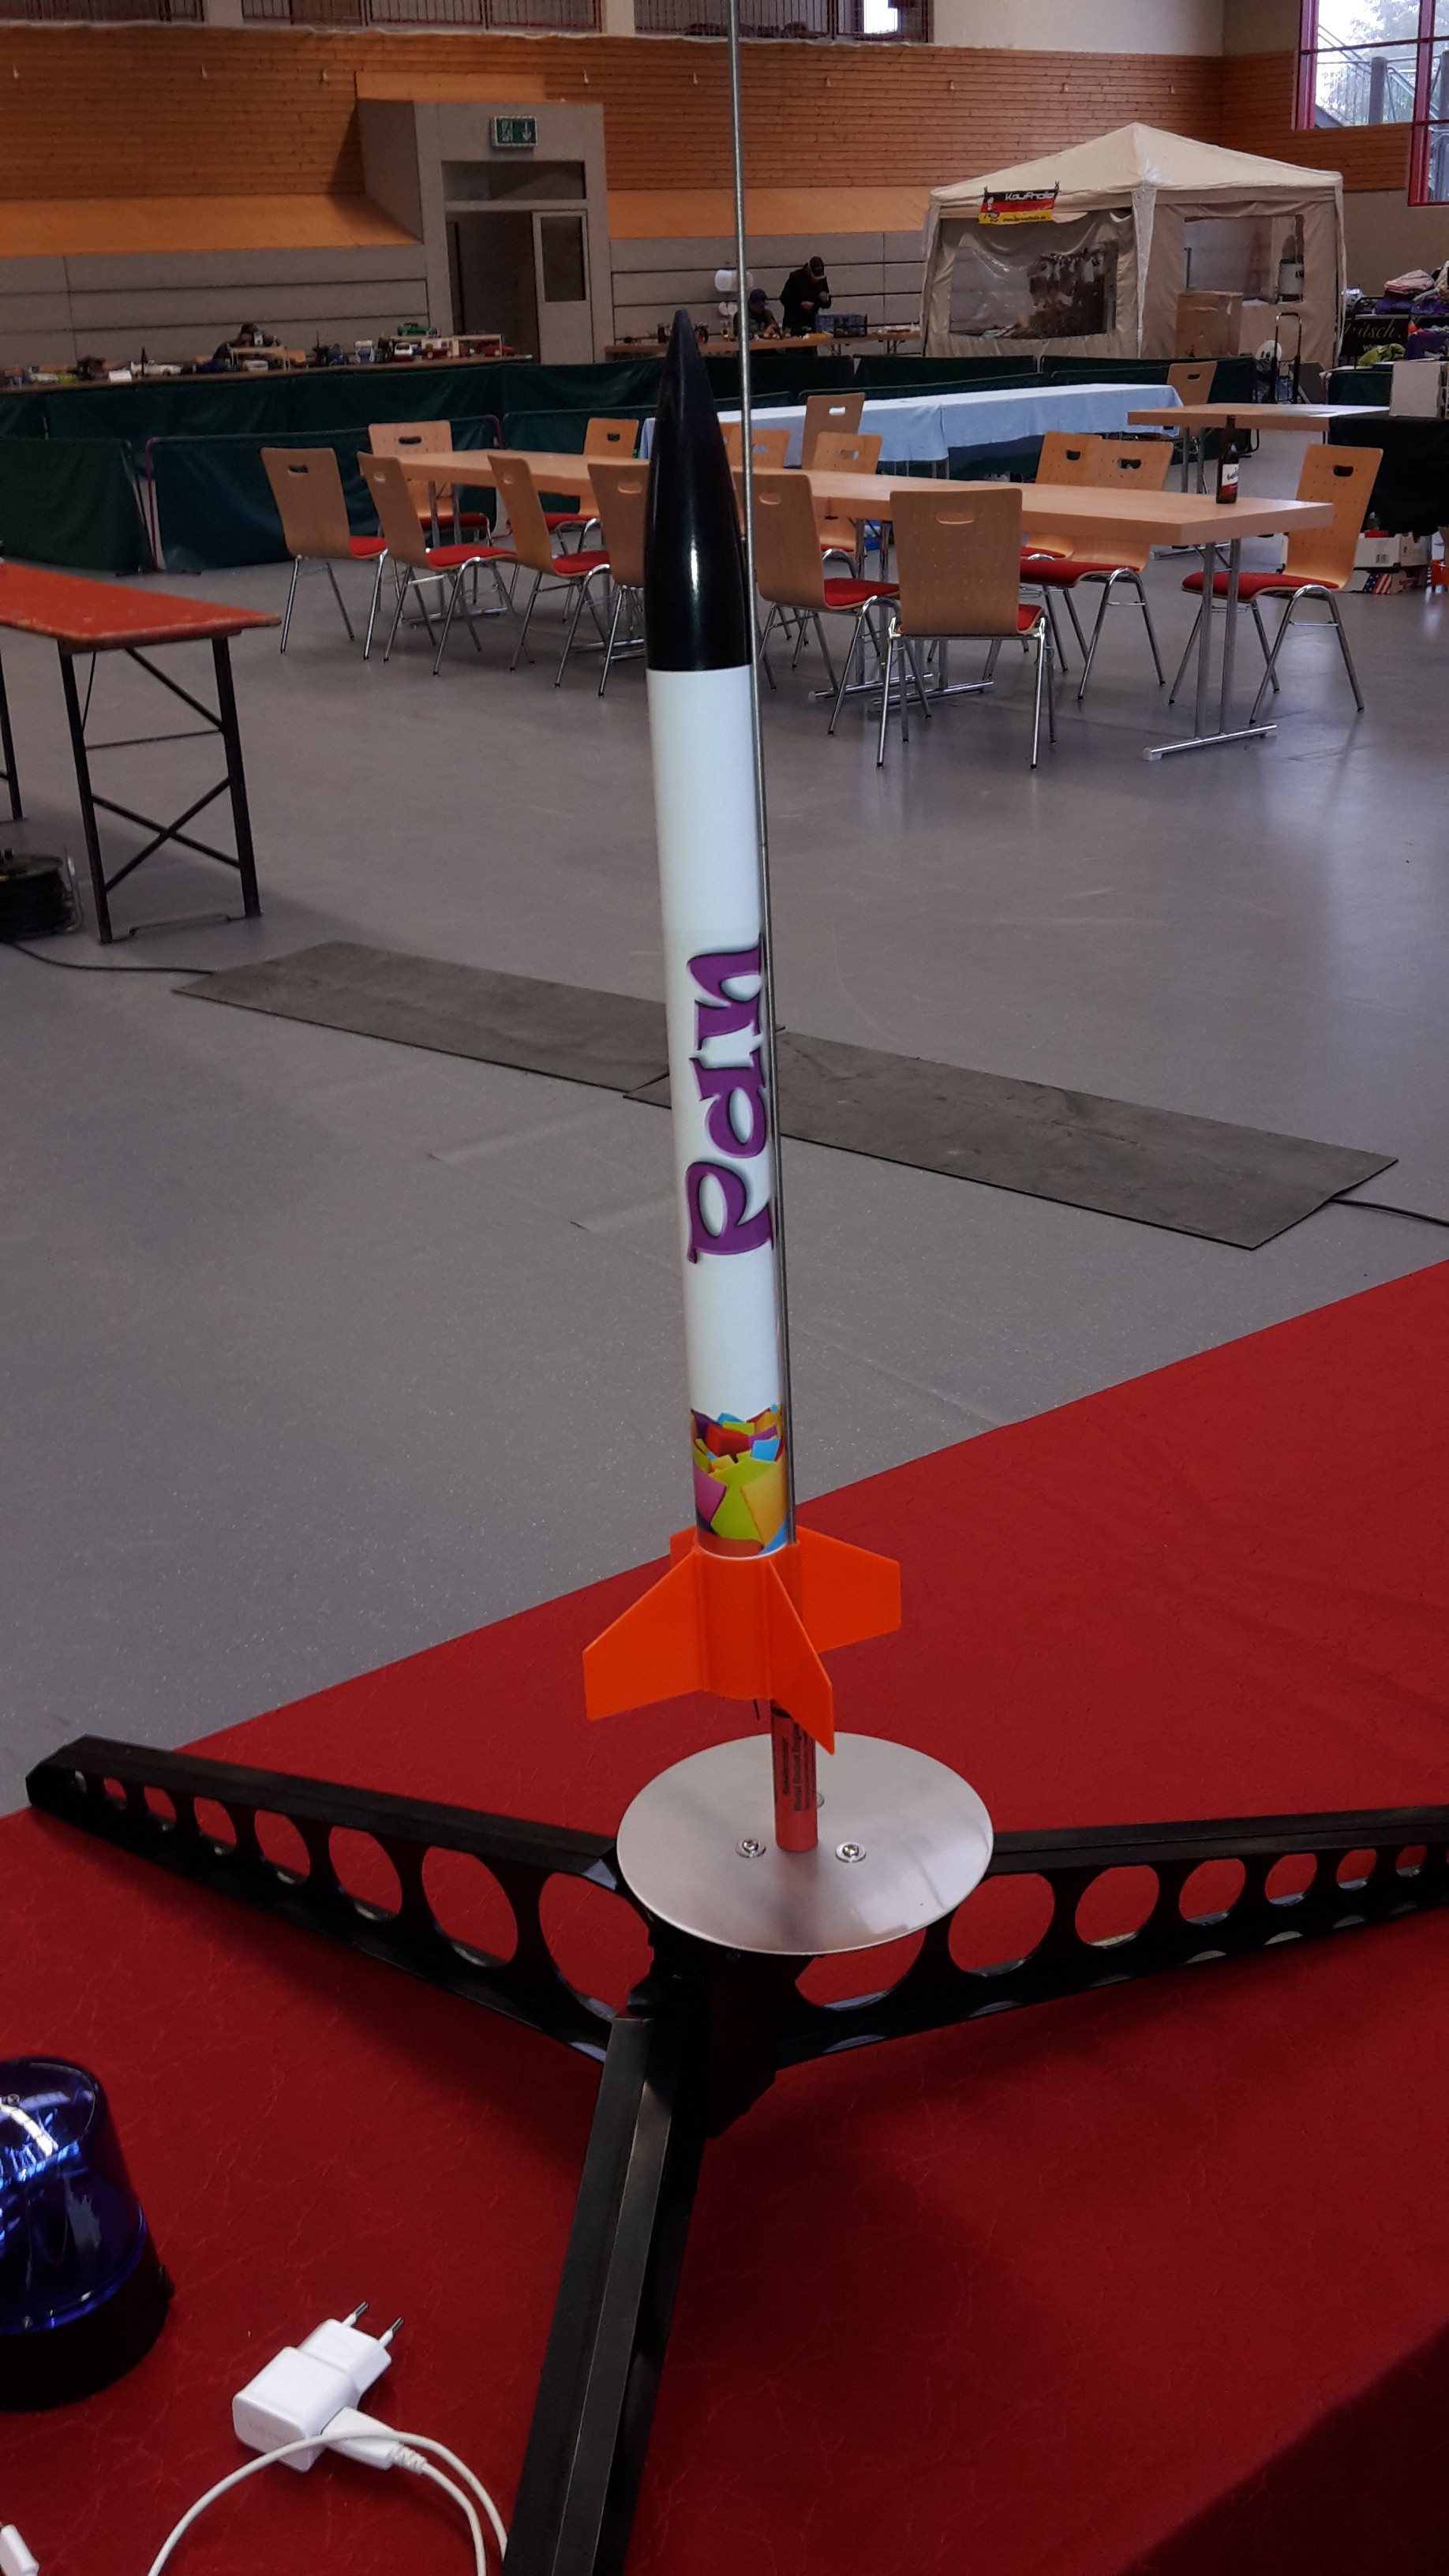 Unsere 1. Modell-Rakete mit einer Größe von etwa 50cm + Startrampe